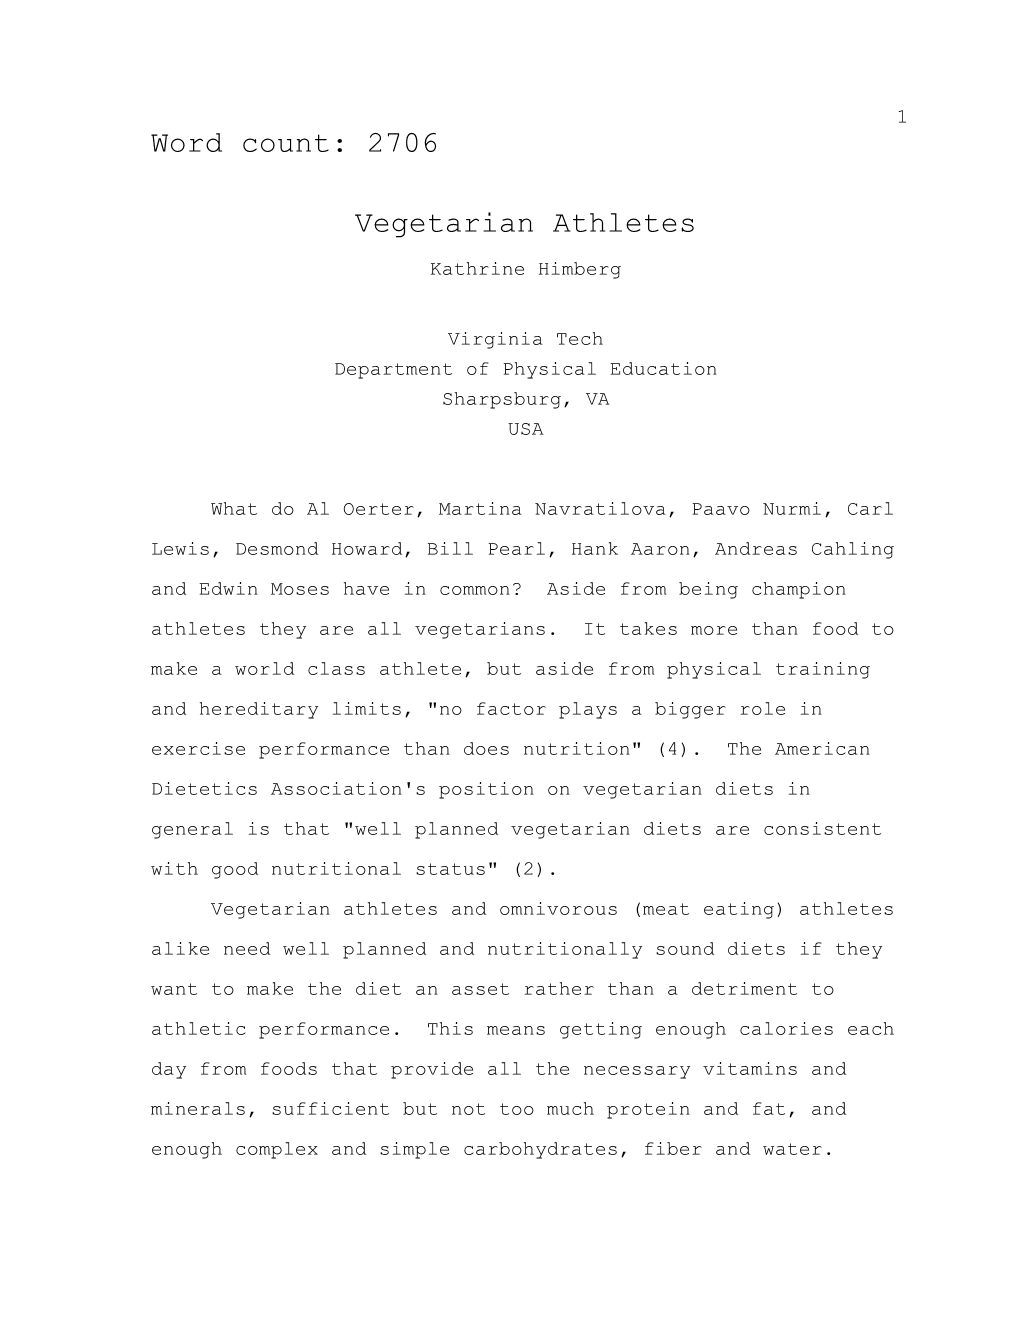 Vegetarian Athletes